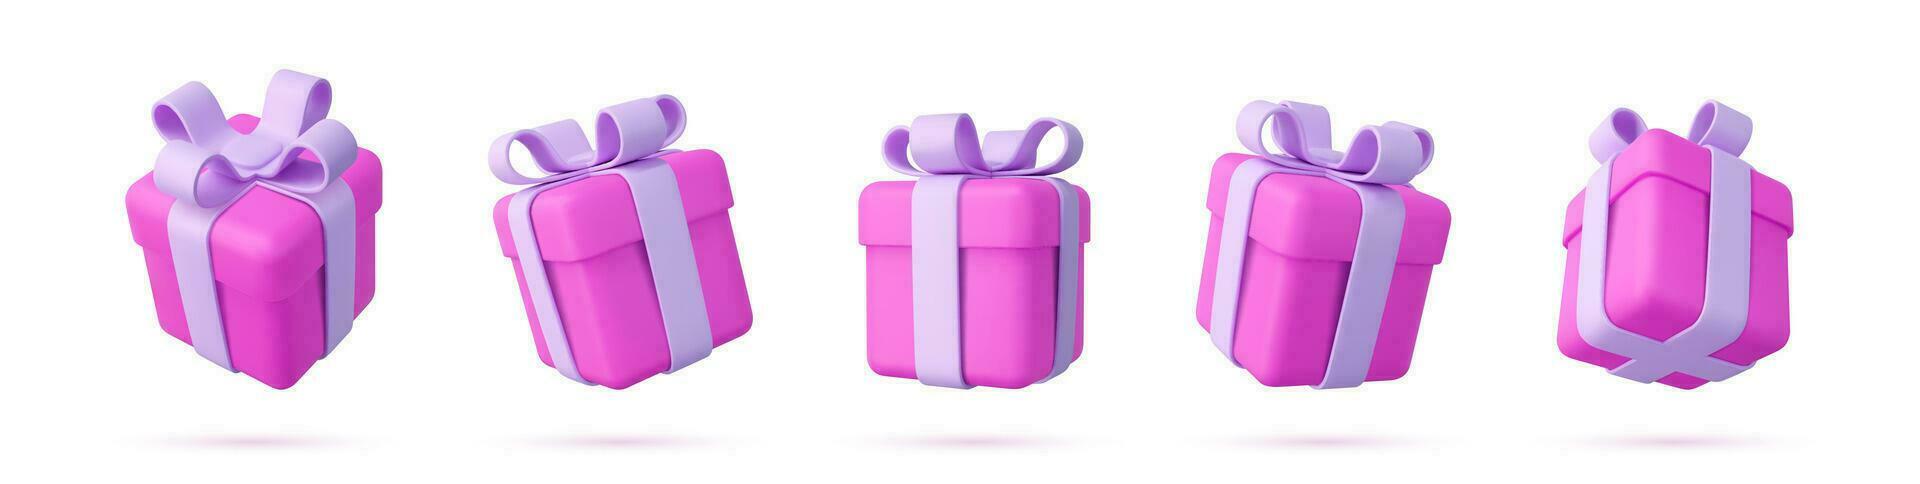 conjunto de realista Navidad regalos cajas aislado en un blanco antecedentes. cinco regalo cajas con arcos y cintas fiesta decoración presenta festivo regalo sorpresa. 3d representación. vector ilustración